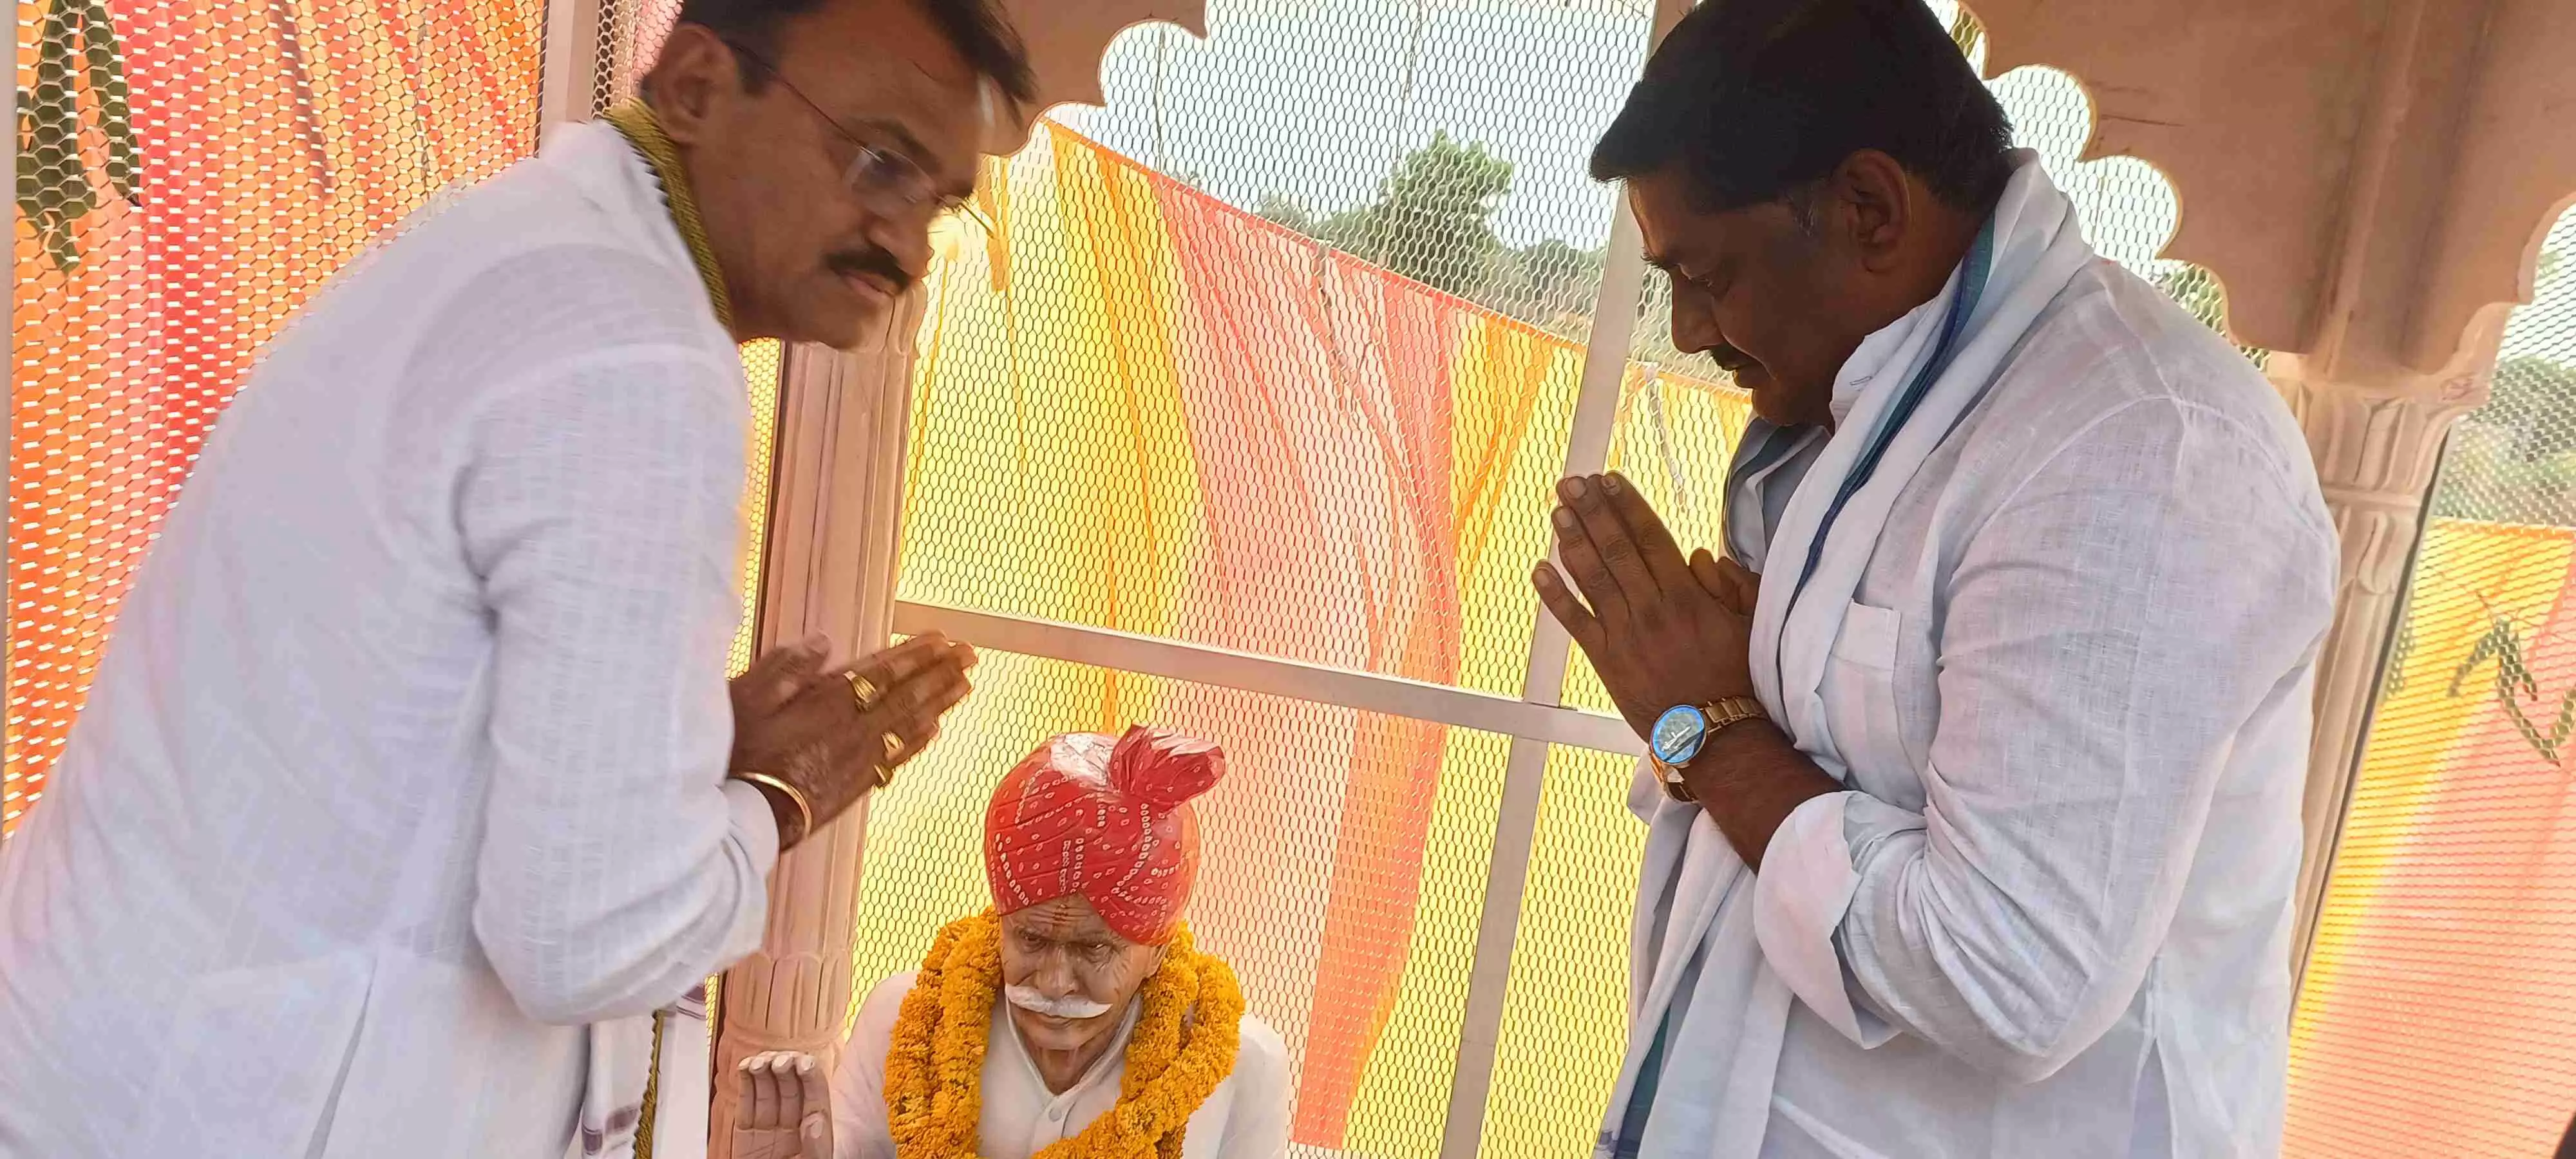 jaipur : उप मुख्यमंत्री डॉ. प्रेमचंद बैरवा ने हमीरपुरा में मूर्ति प्राण प्रतिष्ठा समारोह में की शिरकत